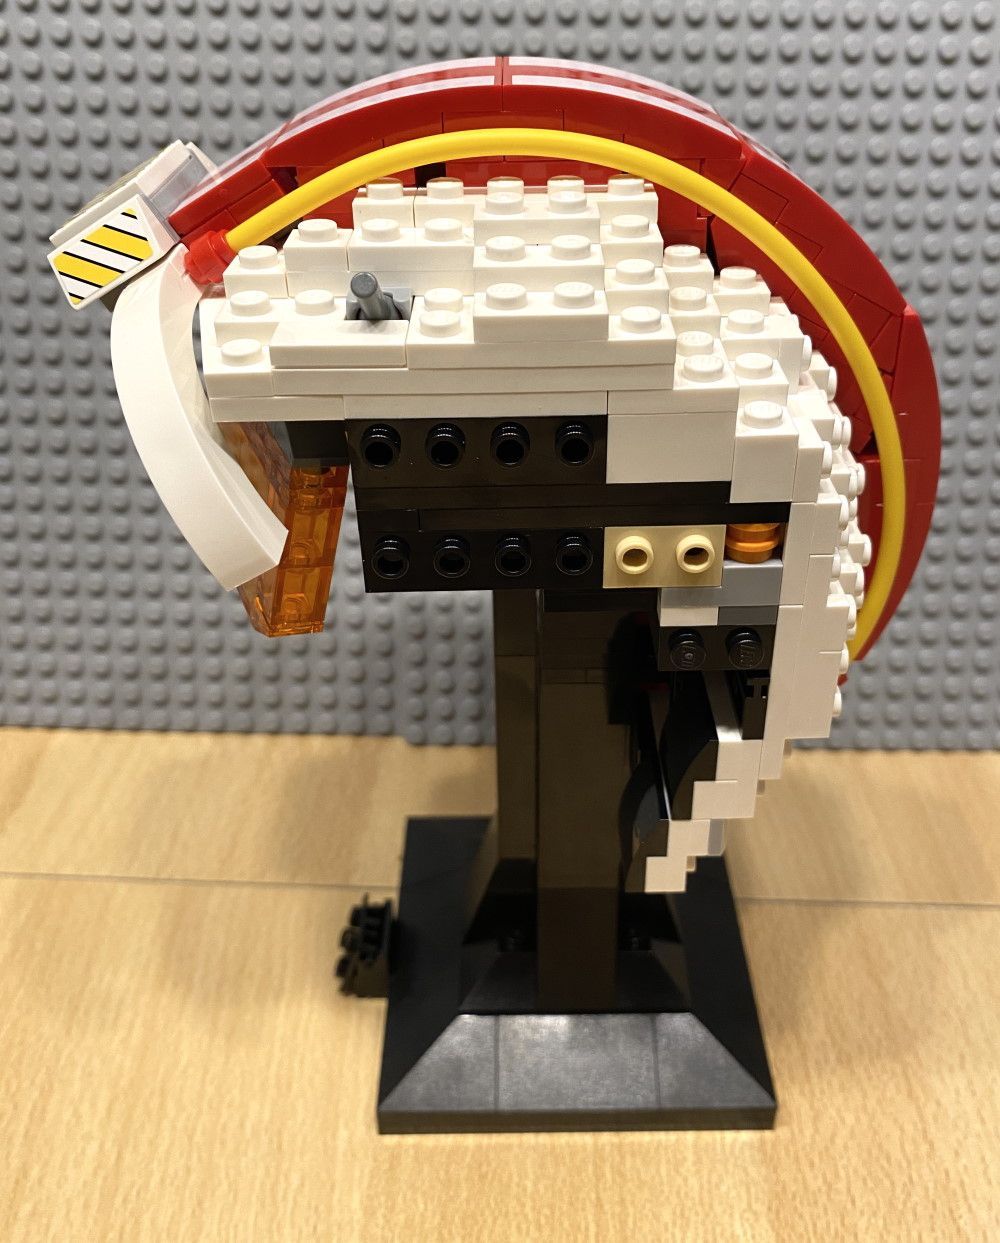 LEGO 75327 Helm von Luke Skywalker im Review